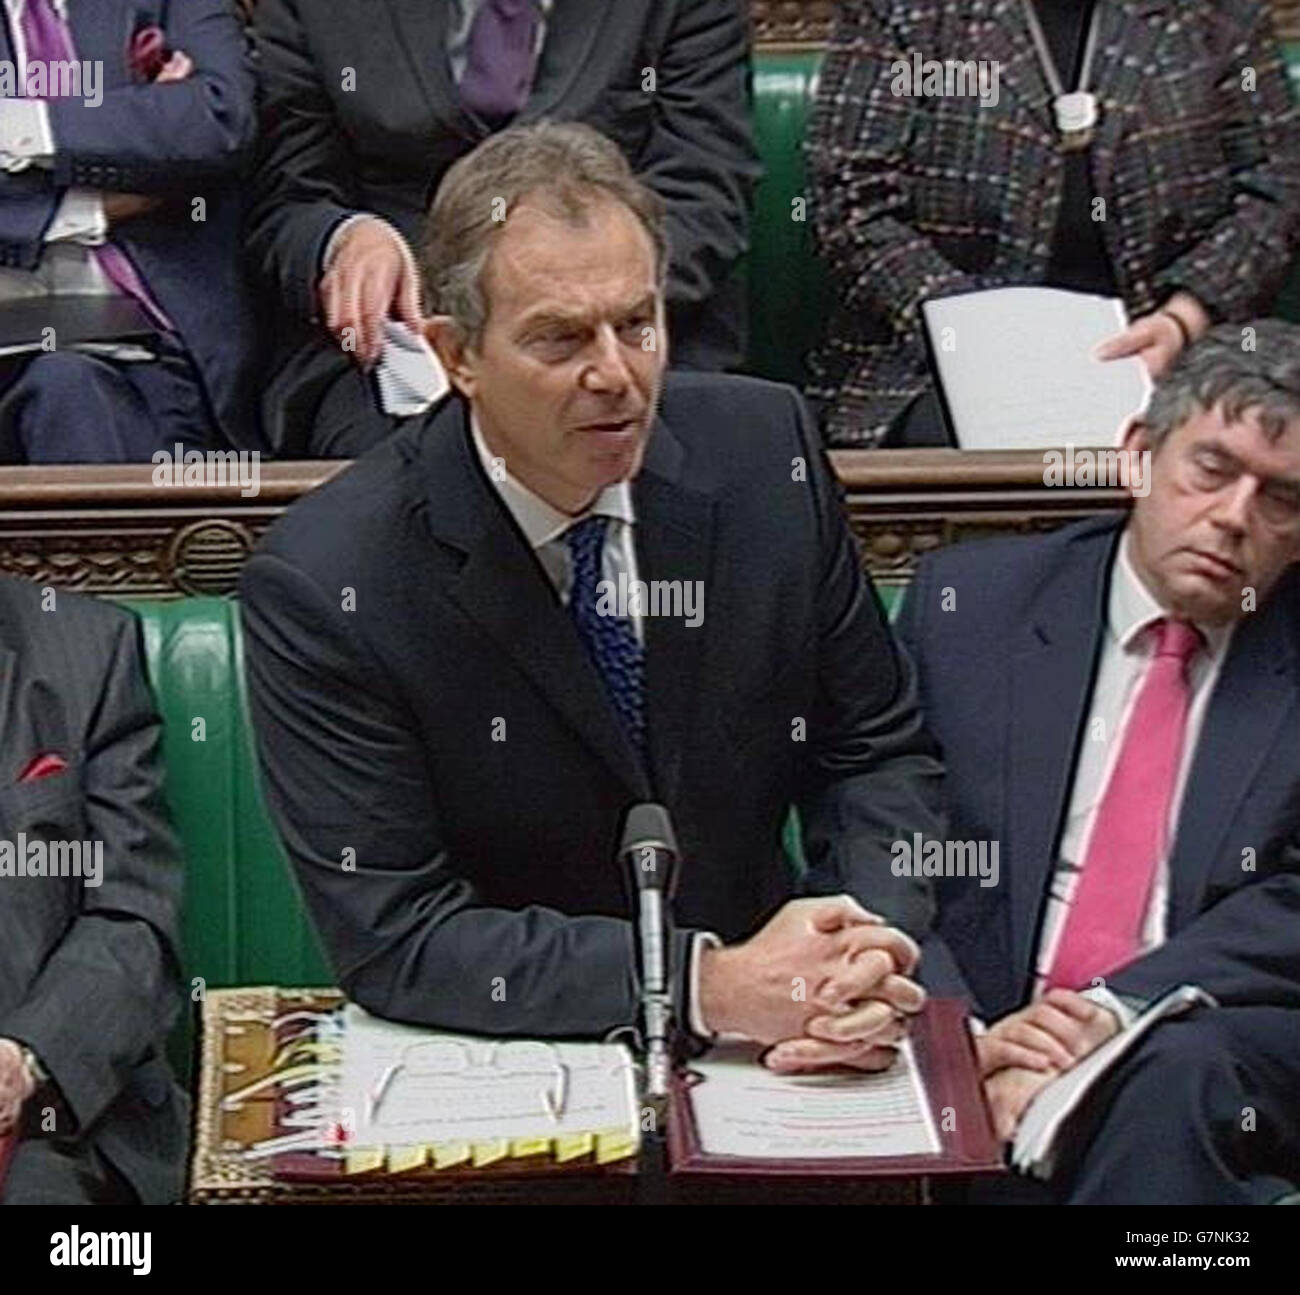 Questions du premier ministre - Chambre des communes. Le Premier ministre britannique Tony Blair. Banque D'Images